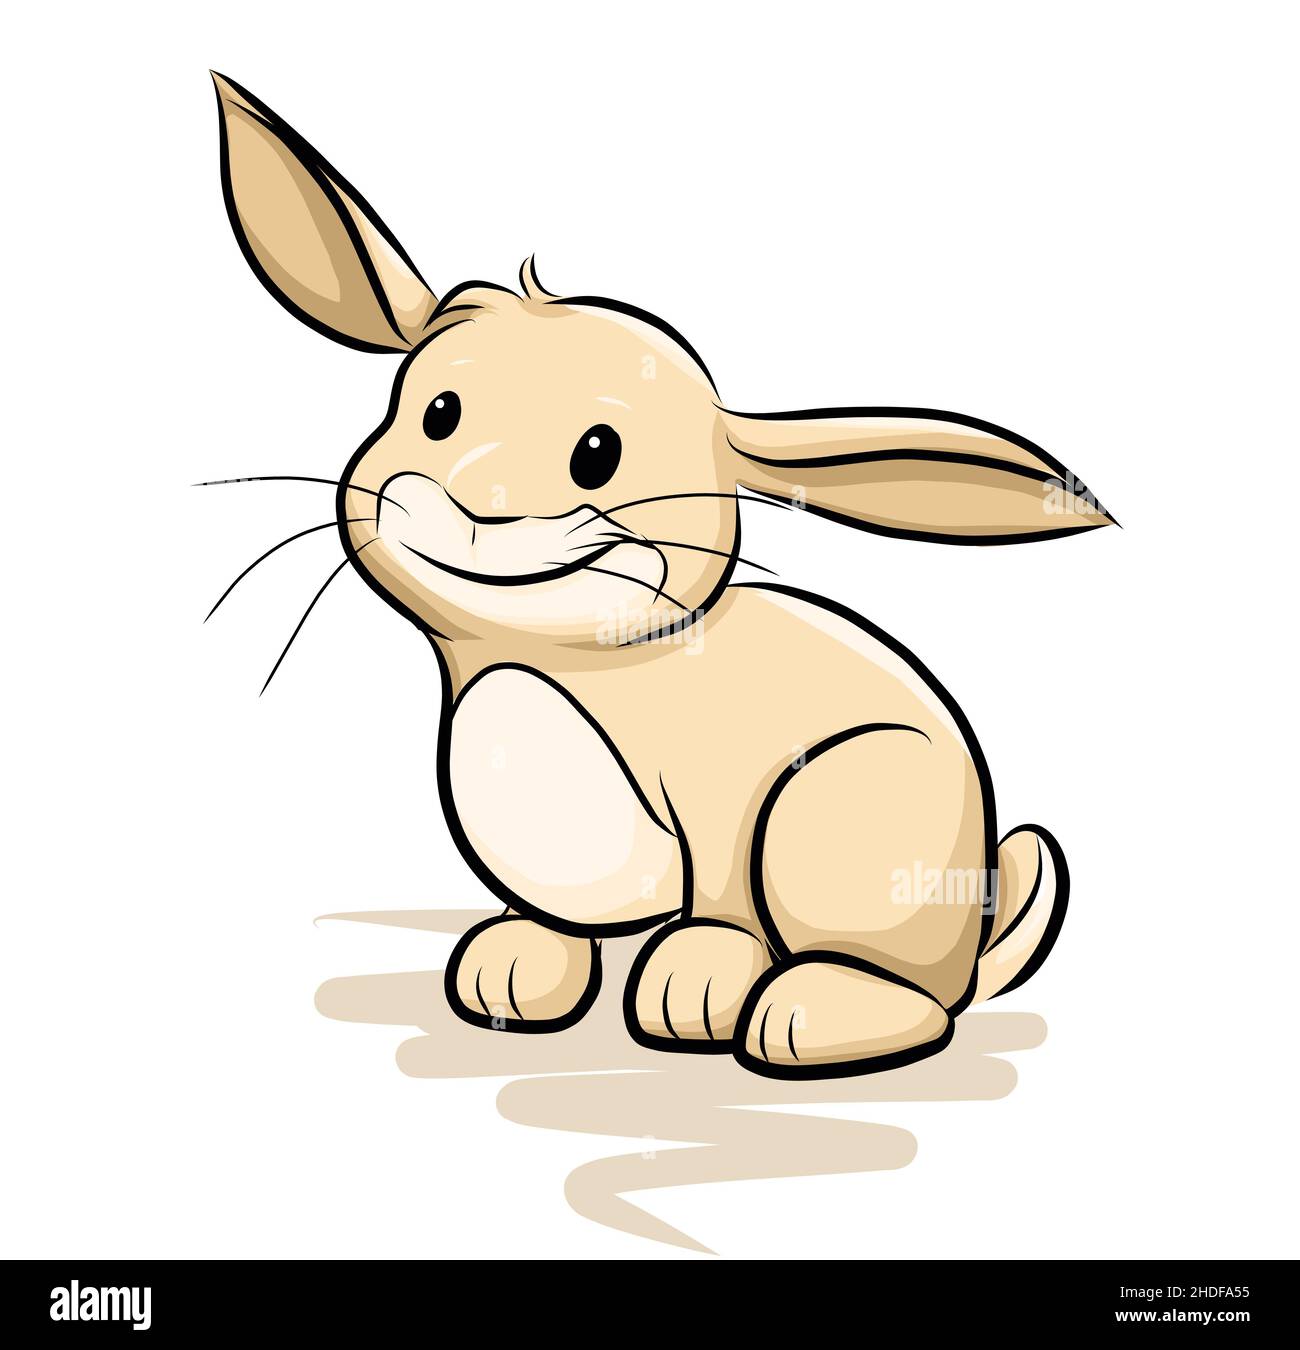 disegno, coniglio del bambino, fumetto, cartone animato, disegni, conigli di bambino, cartoni animati, fumetti, fumetti Foto Stock